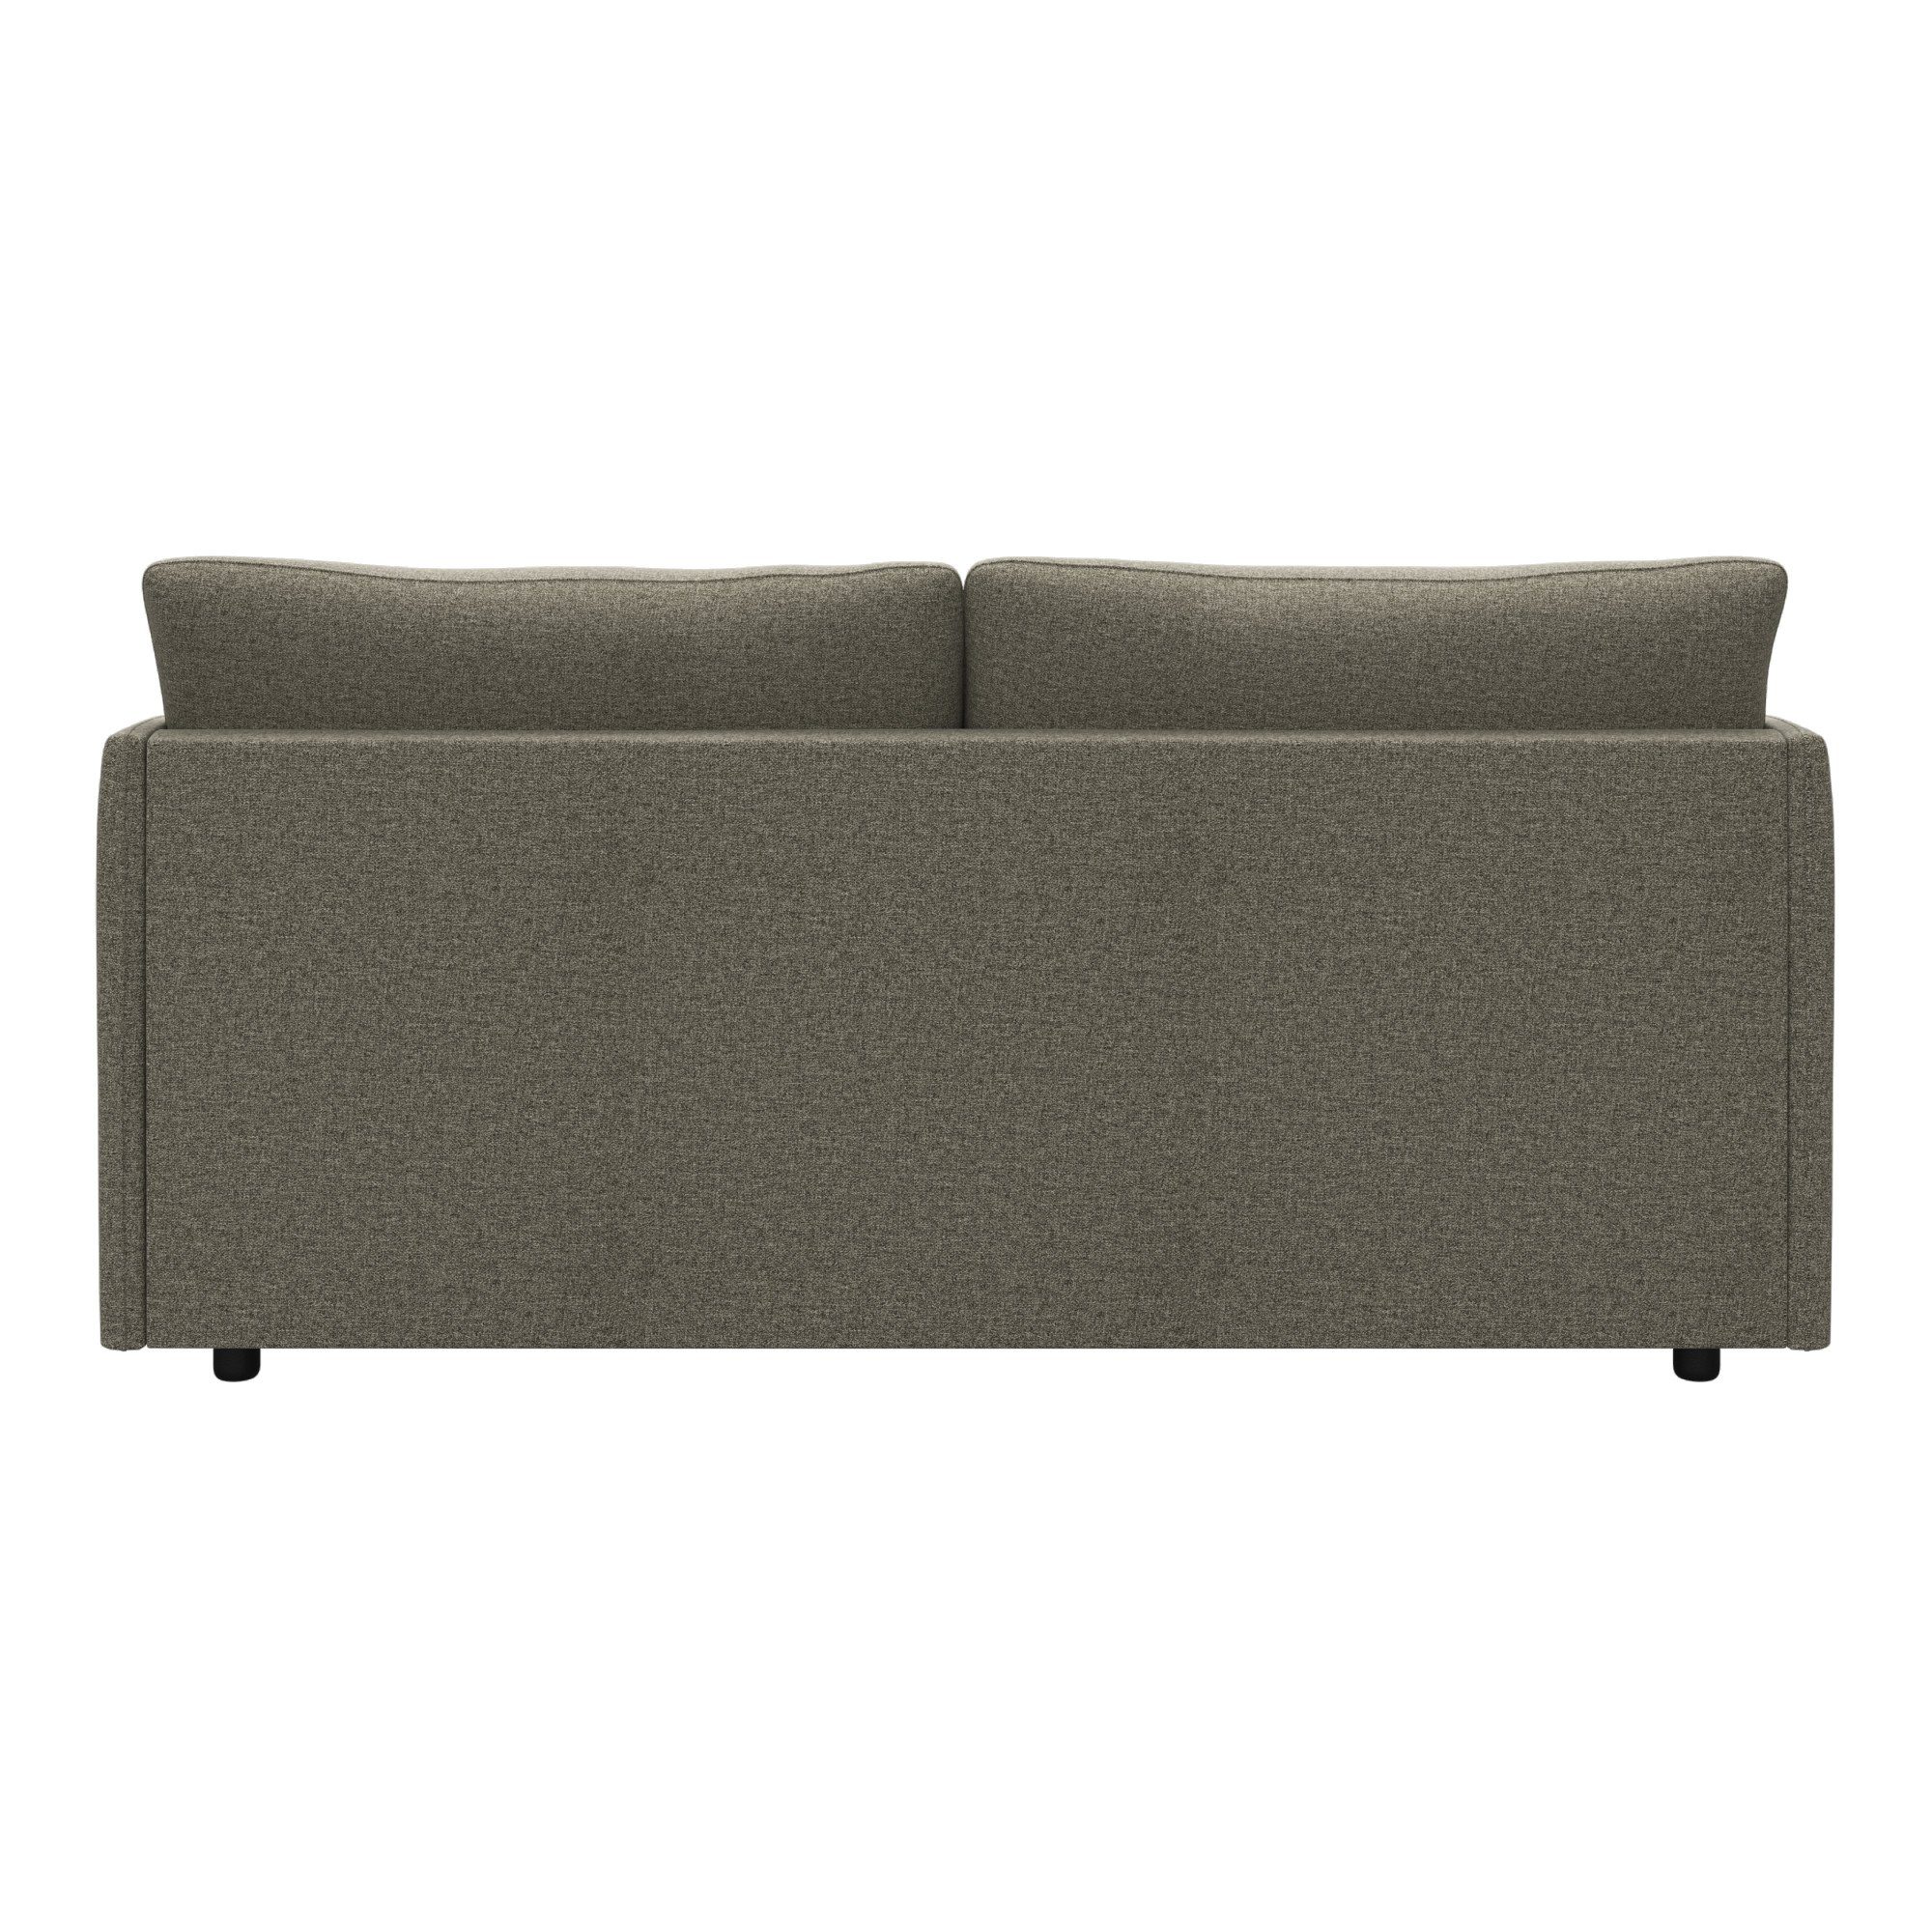 2-Sitzer in attraktiver Sofakombinationen andas Imatra, Form, unterschiedliche verfügbar